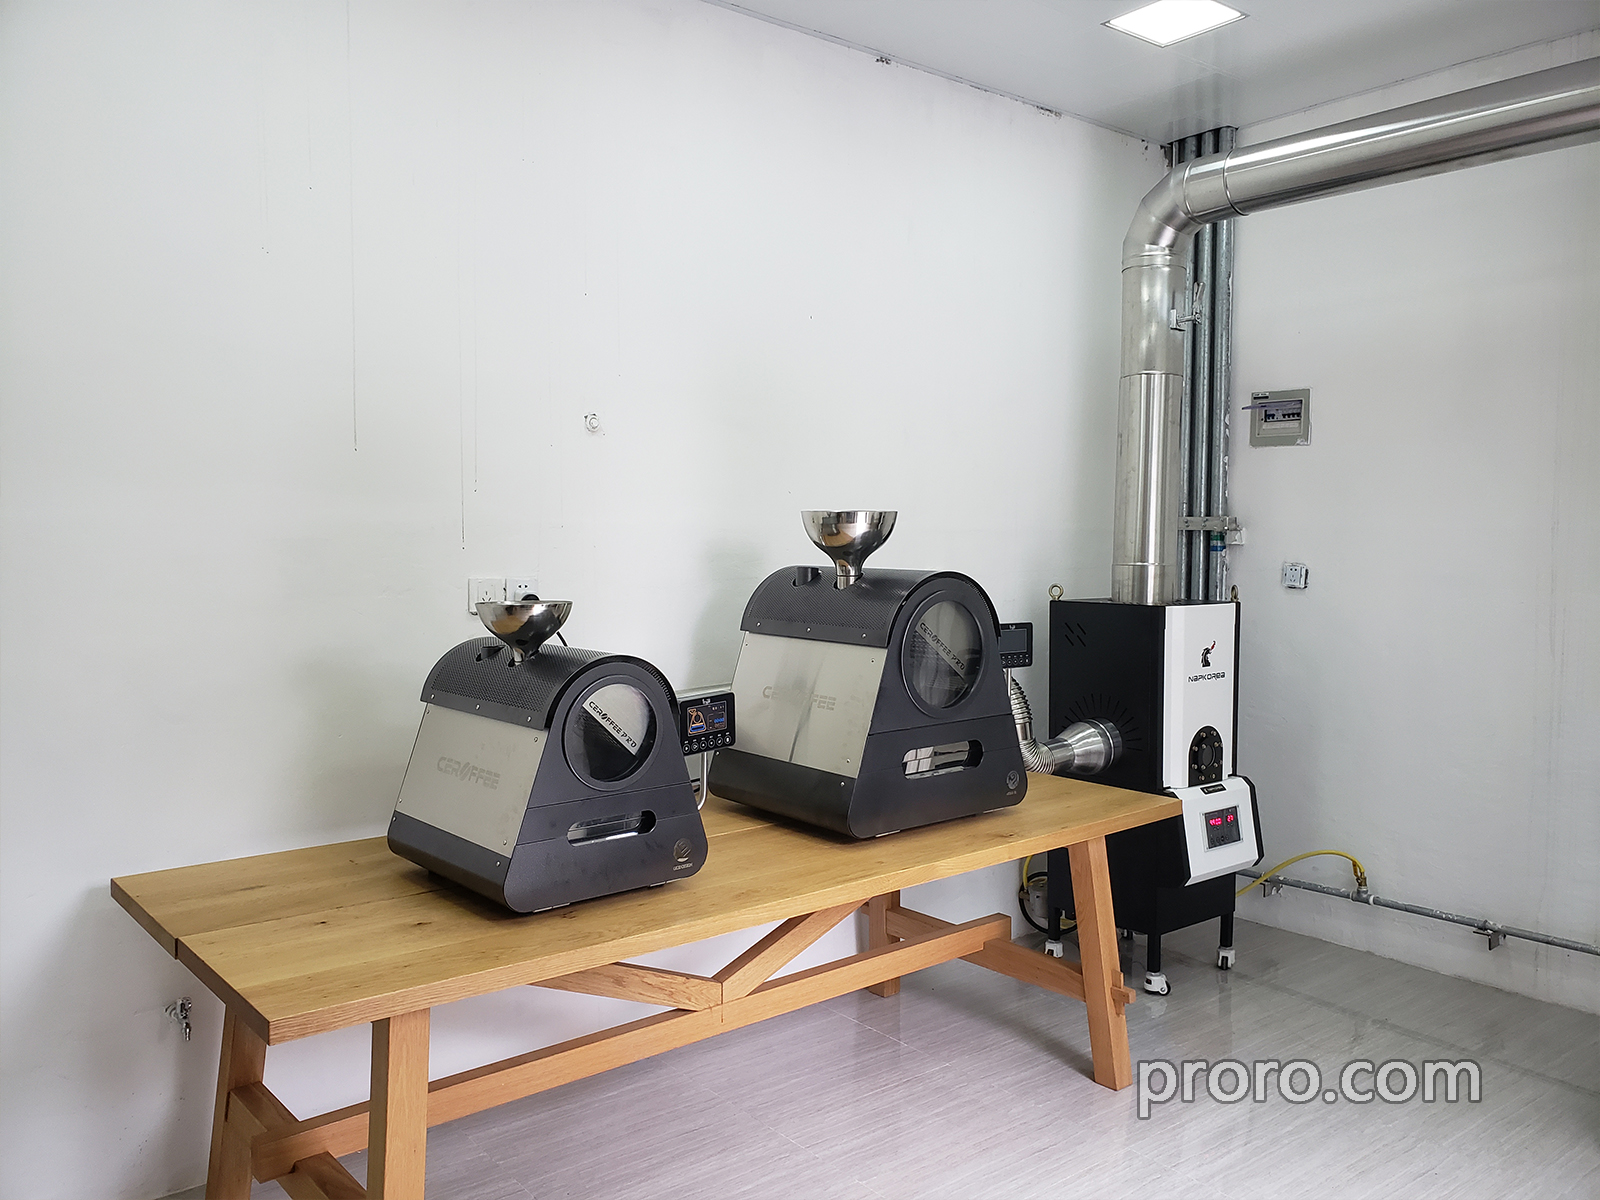 CEROFFEE 咖啡烘焙机 消烟除味 后燃机 安装案例 - 西恩泰克中国总公司照片。